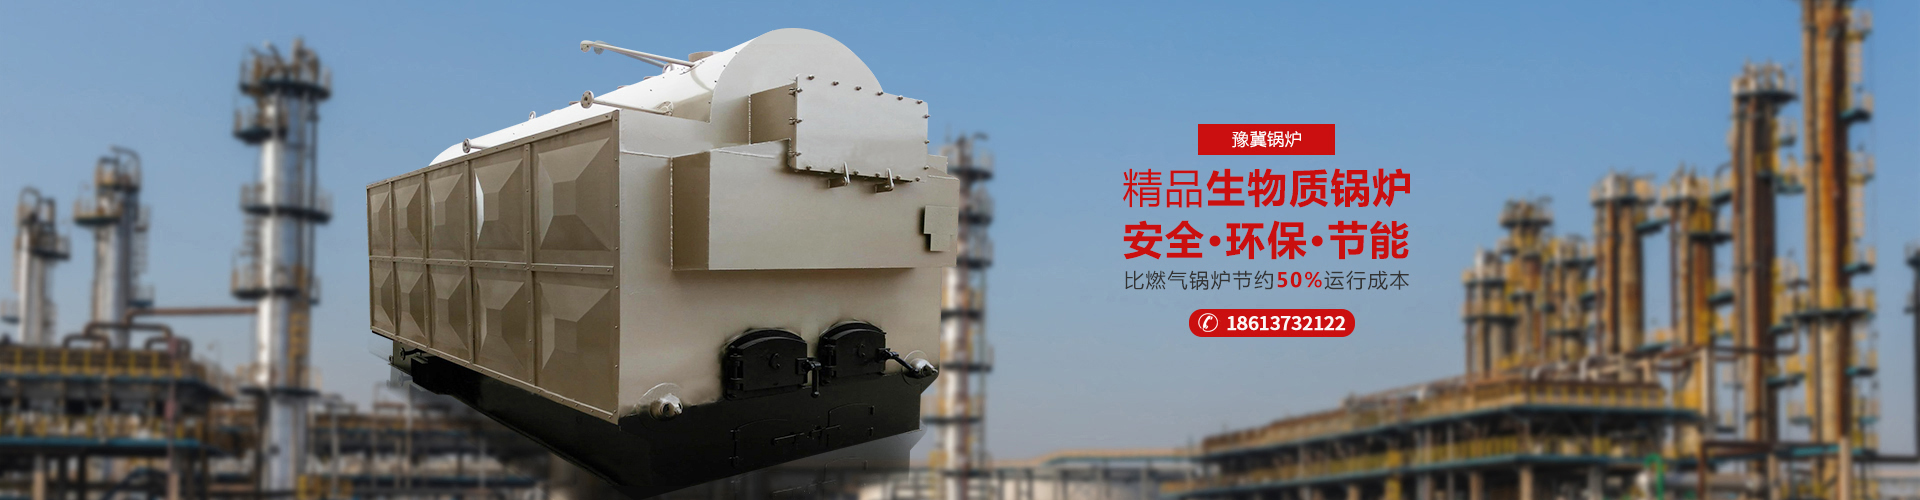 河南豫冀锅炉容器制造有限公司